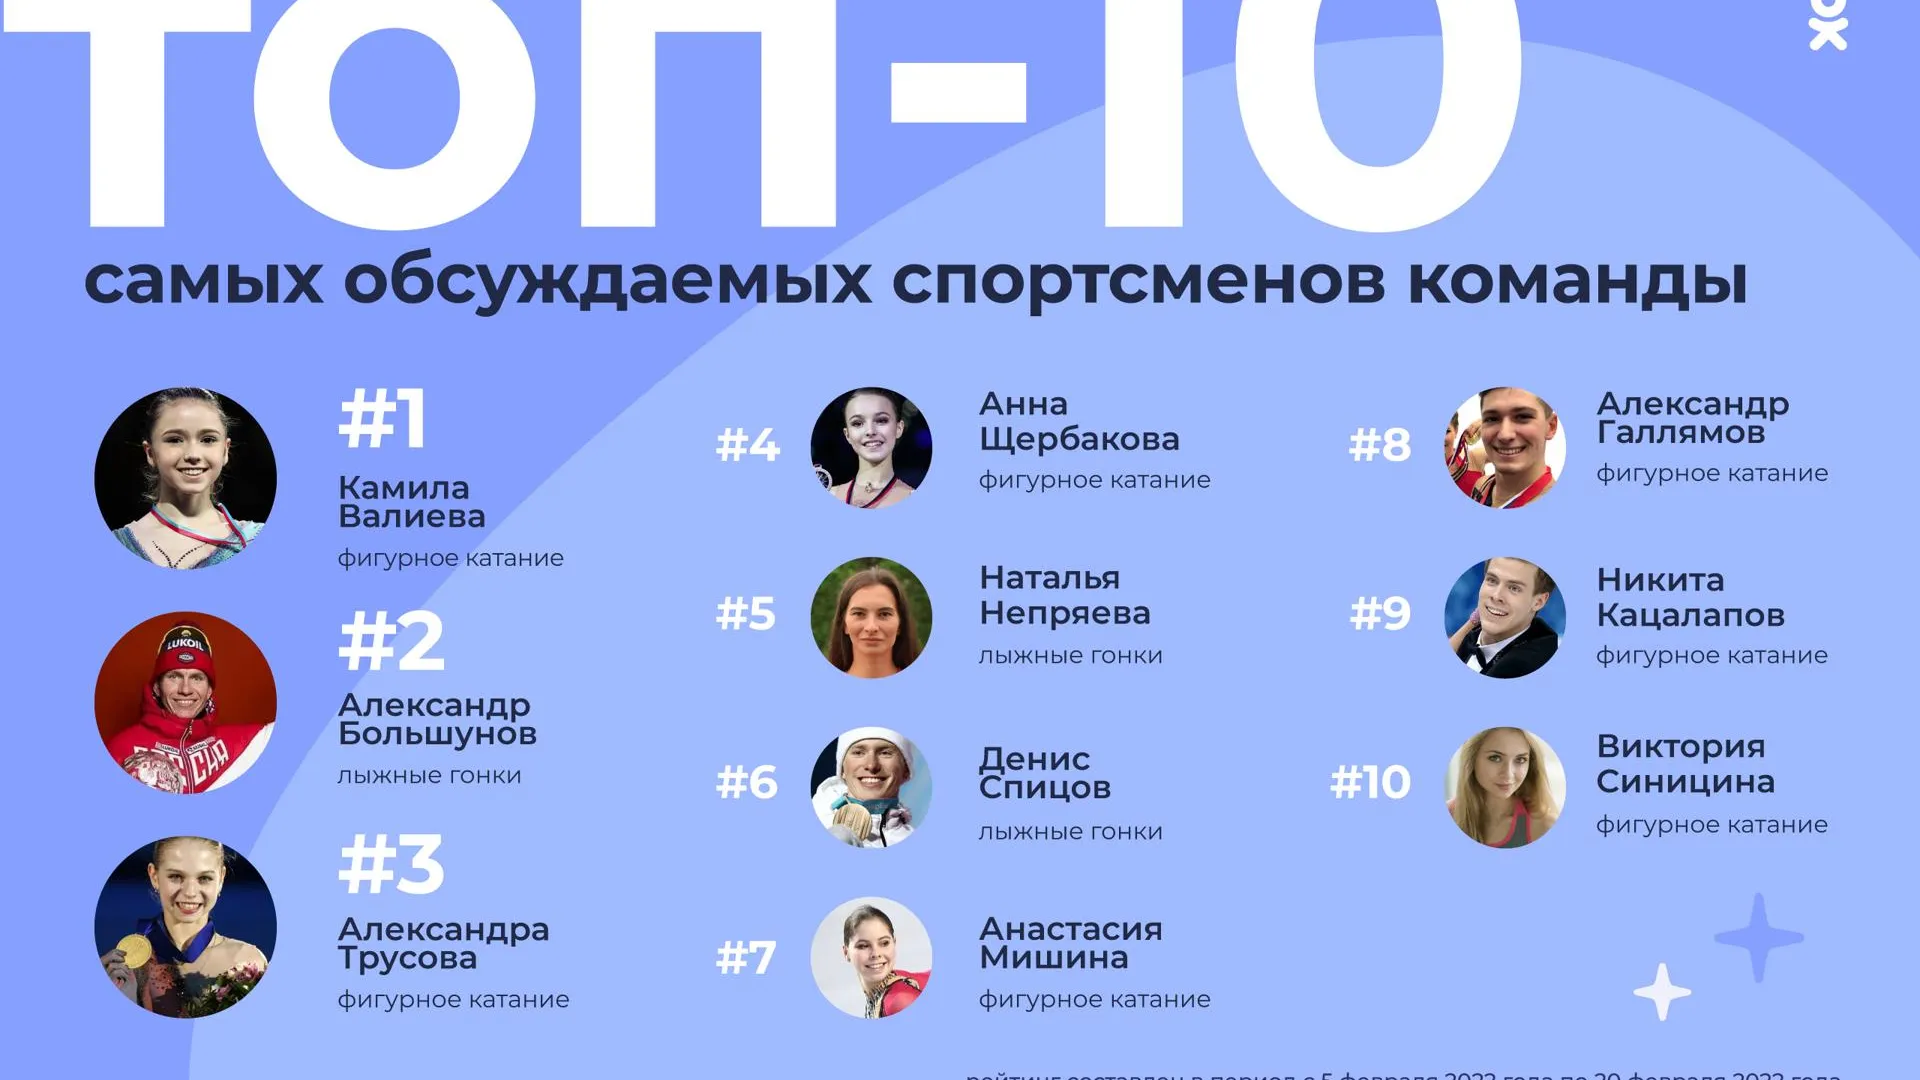 Валиева, Большунов и Трусова вошли в рейтинг самых обсуждаемых спортсменов в ОК